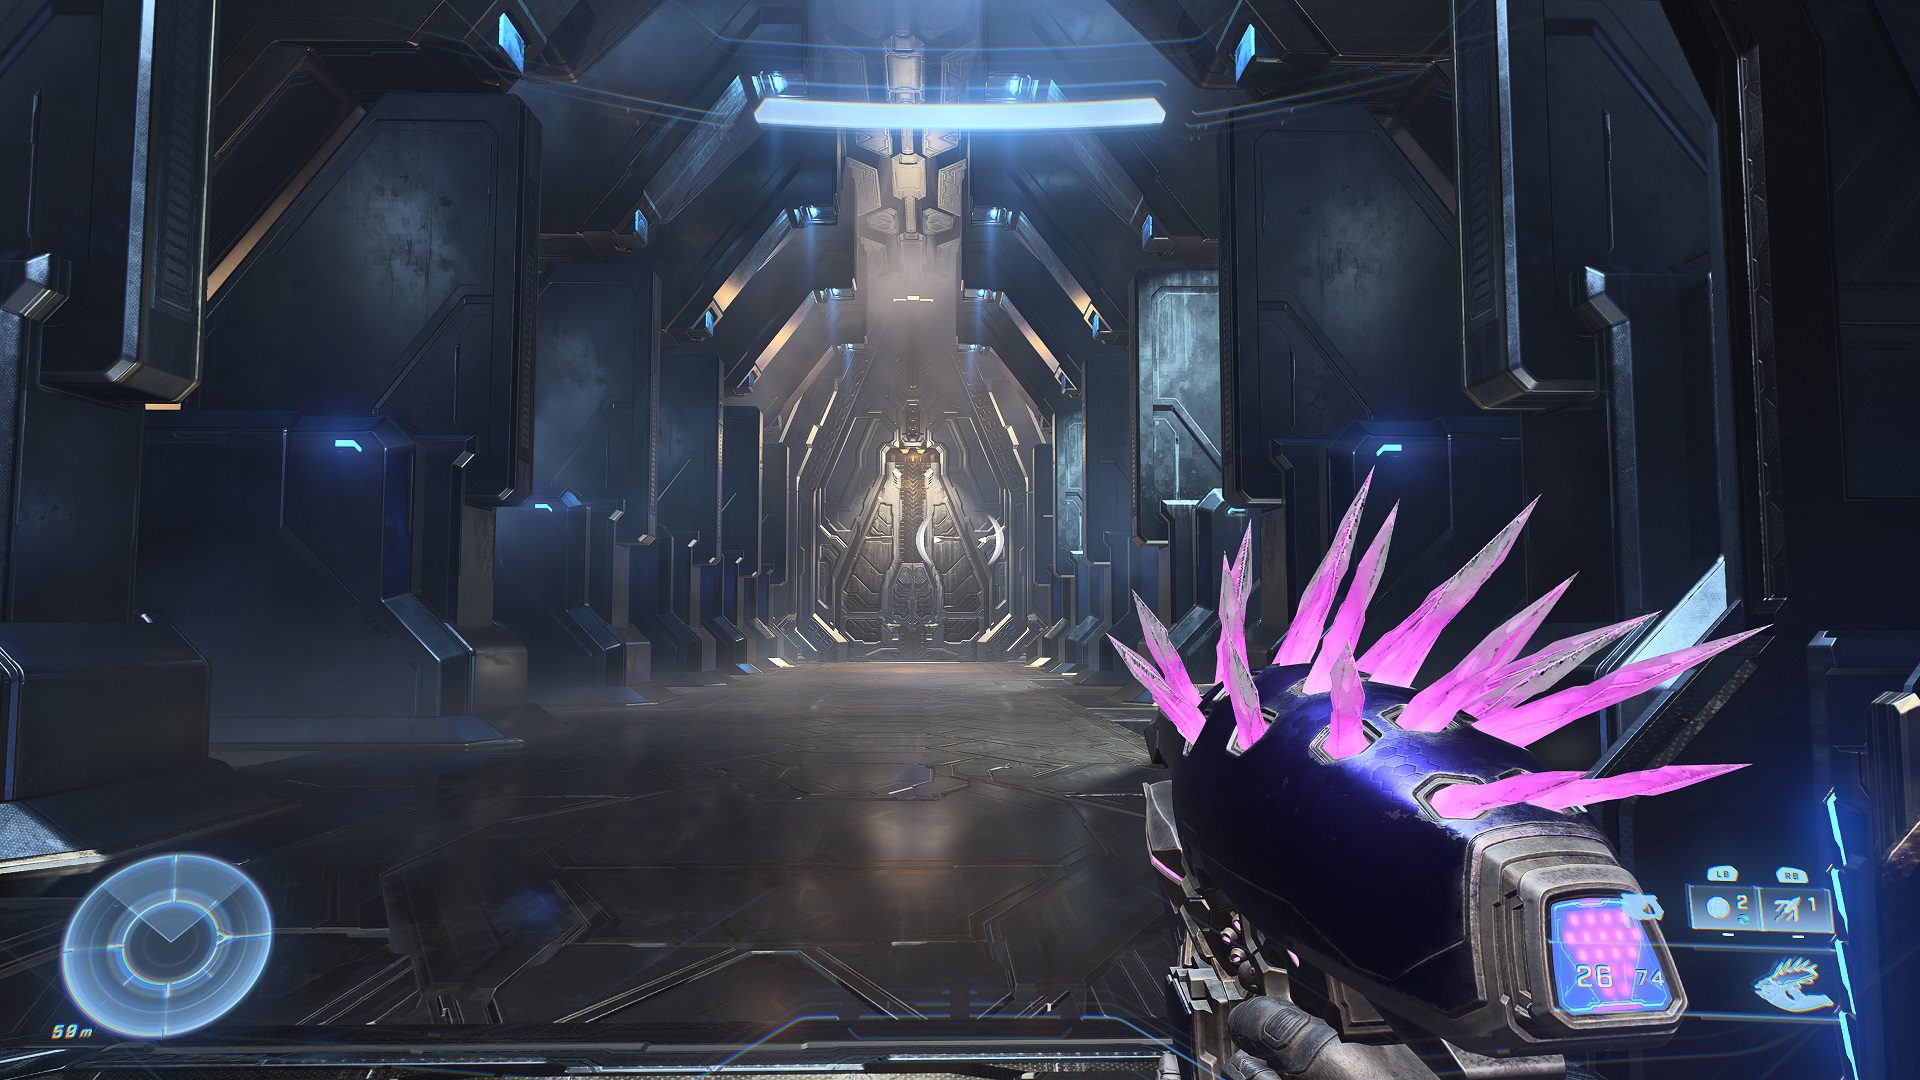 Análisis de Halo Infinite - El Jefe ha vuelto por la puerta grande - Analizamos Halo Infinite, el juego más esperado de Xbox que llega para reinventar la franquicia. ¿Listos para salvar a la humanidad?